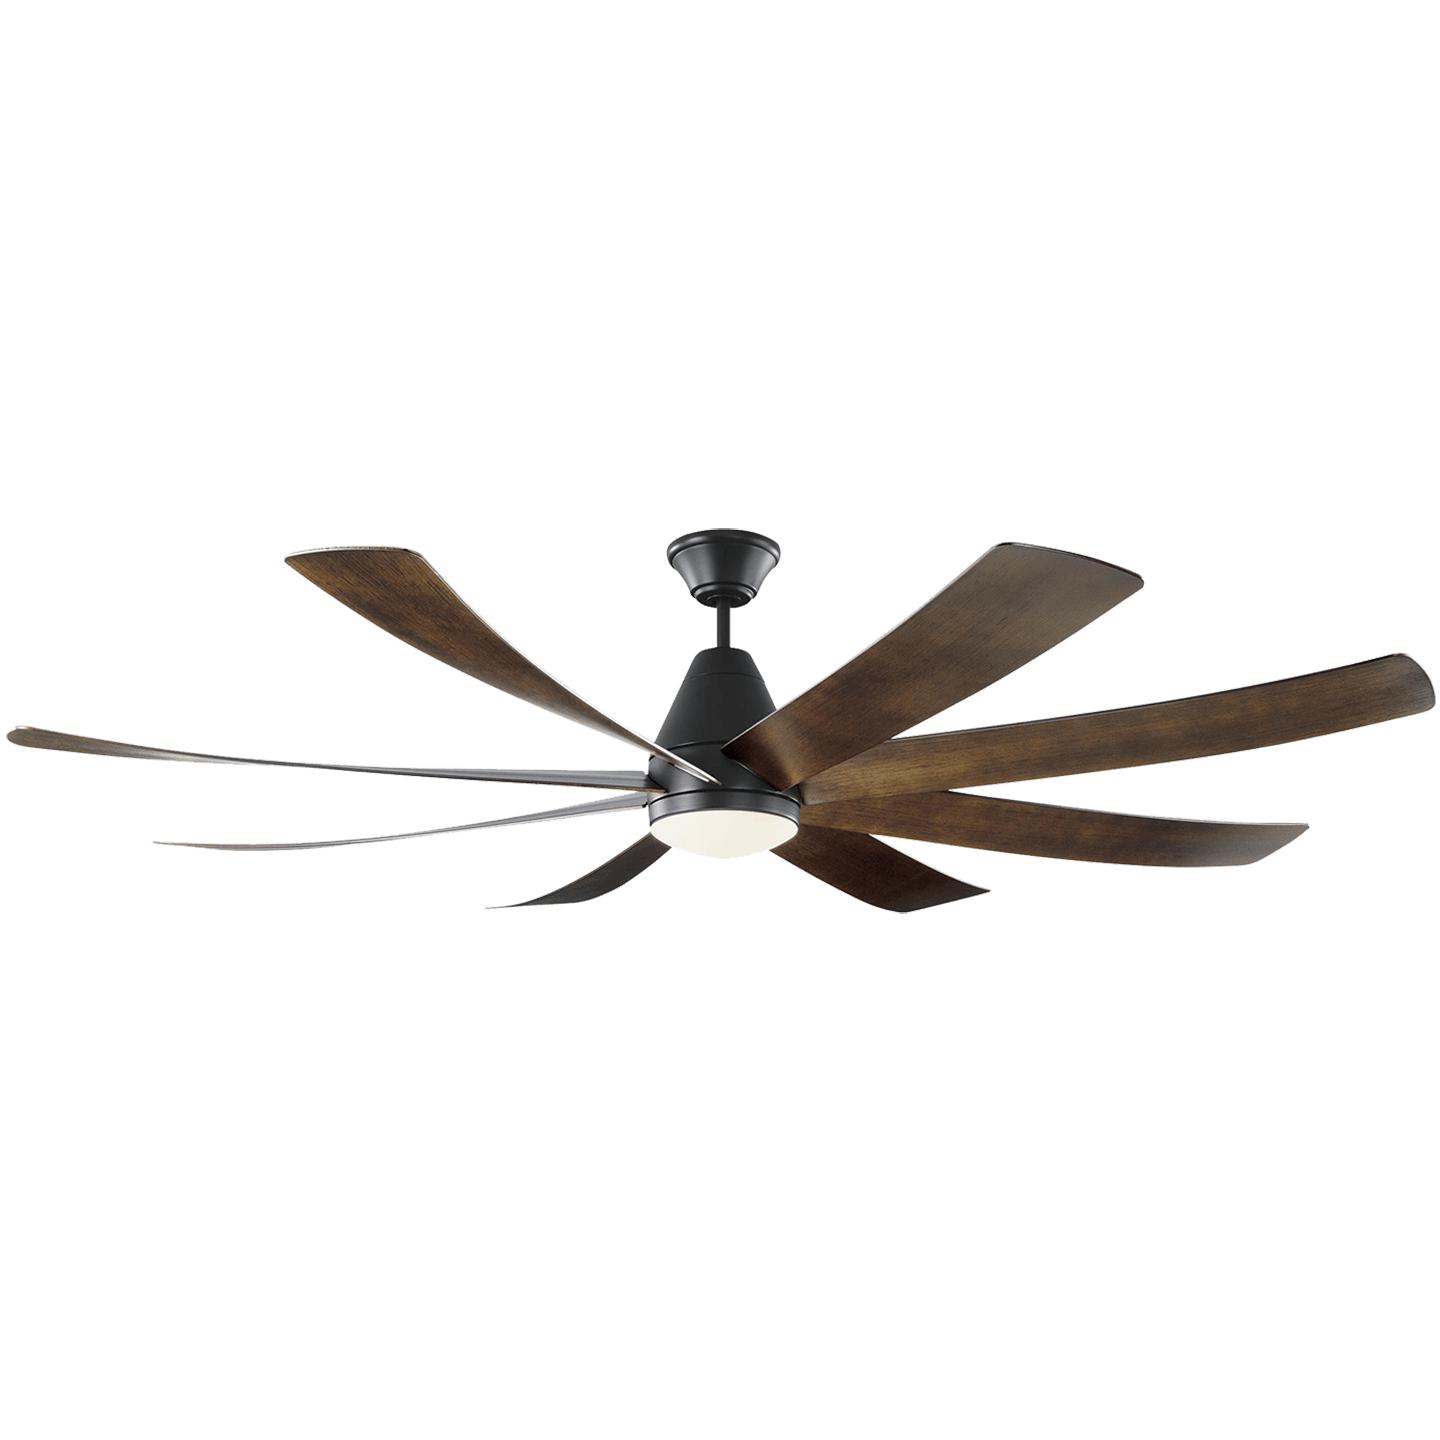 Купить Потолочный вентилятор Kingston 72" Ceiling Fan в интернет-магазине roooms.ru